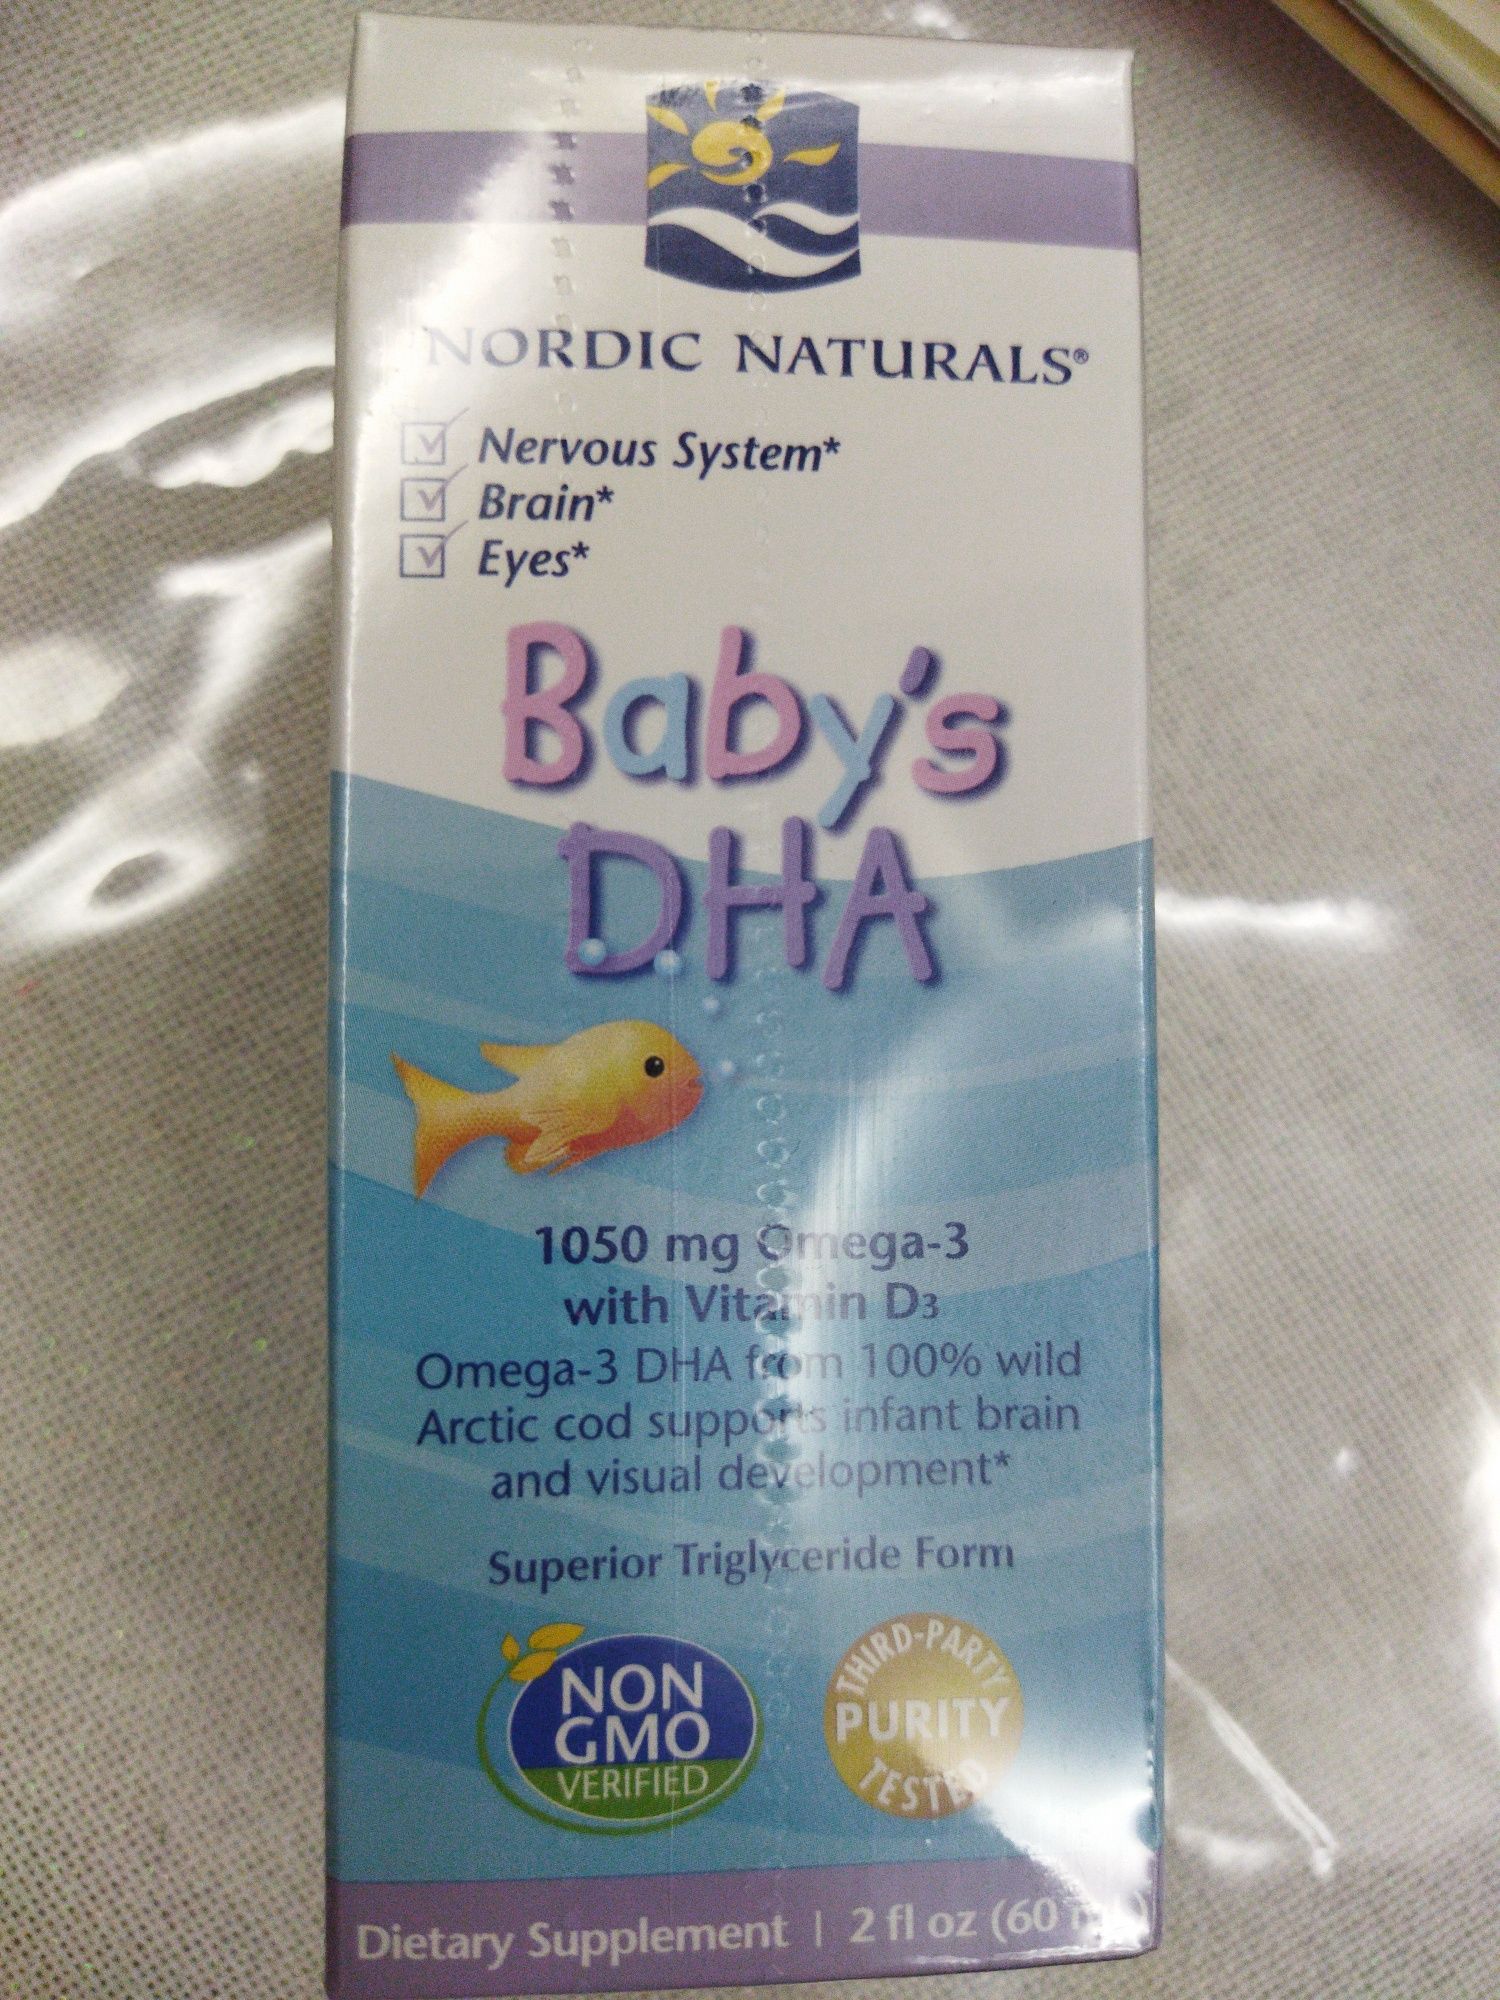 Dha,omega-3, омега-3 для детей,нордик